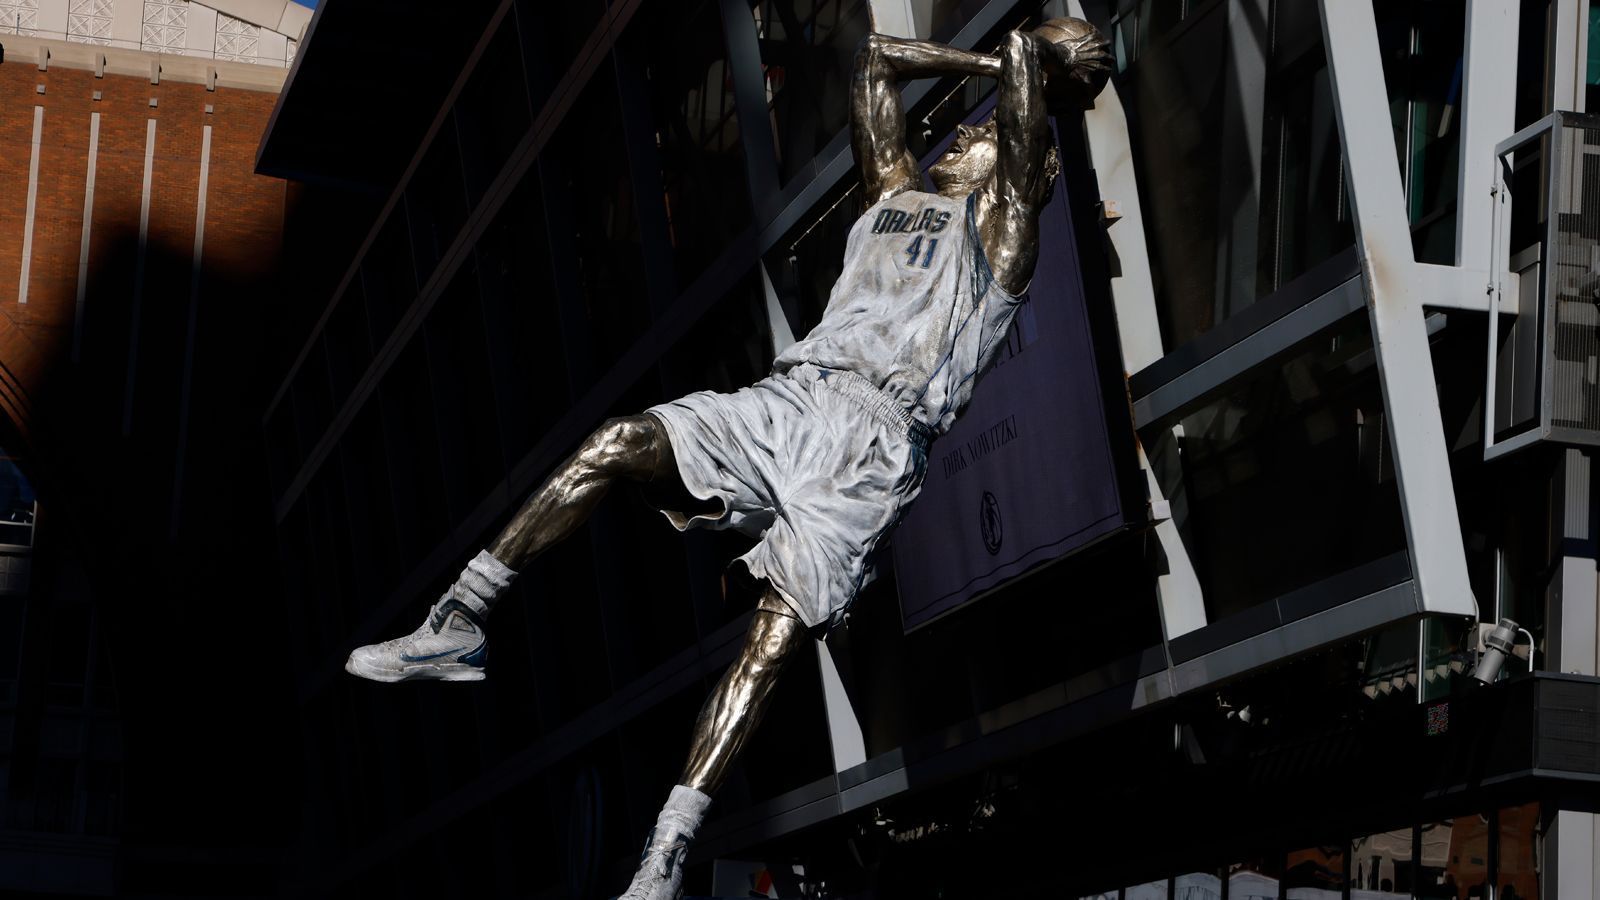 
                <strong>Nowitzki auch in der Halle verewigt</strong><br>
                Vor dem American Airlines Center, der Heim-Arena der Mavericks, wird ab jetzt Nowitzki mit dem "One Leg Fadeaway" die Basketball-Fans begrüßen. In der Halle selbst ist Nowitzkis "Fadeaway" als Silhouette auf dem Hallenparkett verewigt. Mit seiner eigenen Statue bekommt der Würzburger jetzt die nächste Ehrung für seine große NBA-Karriere.
              